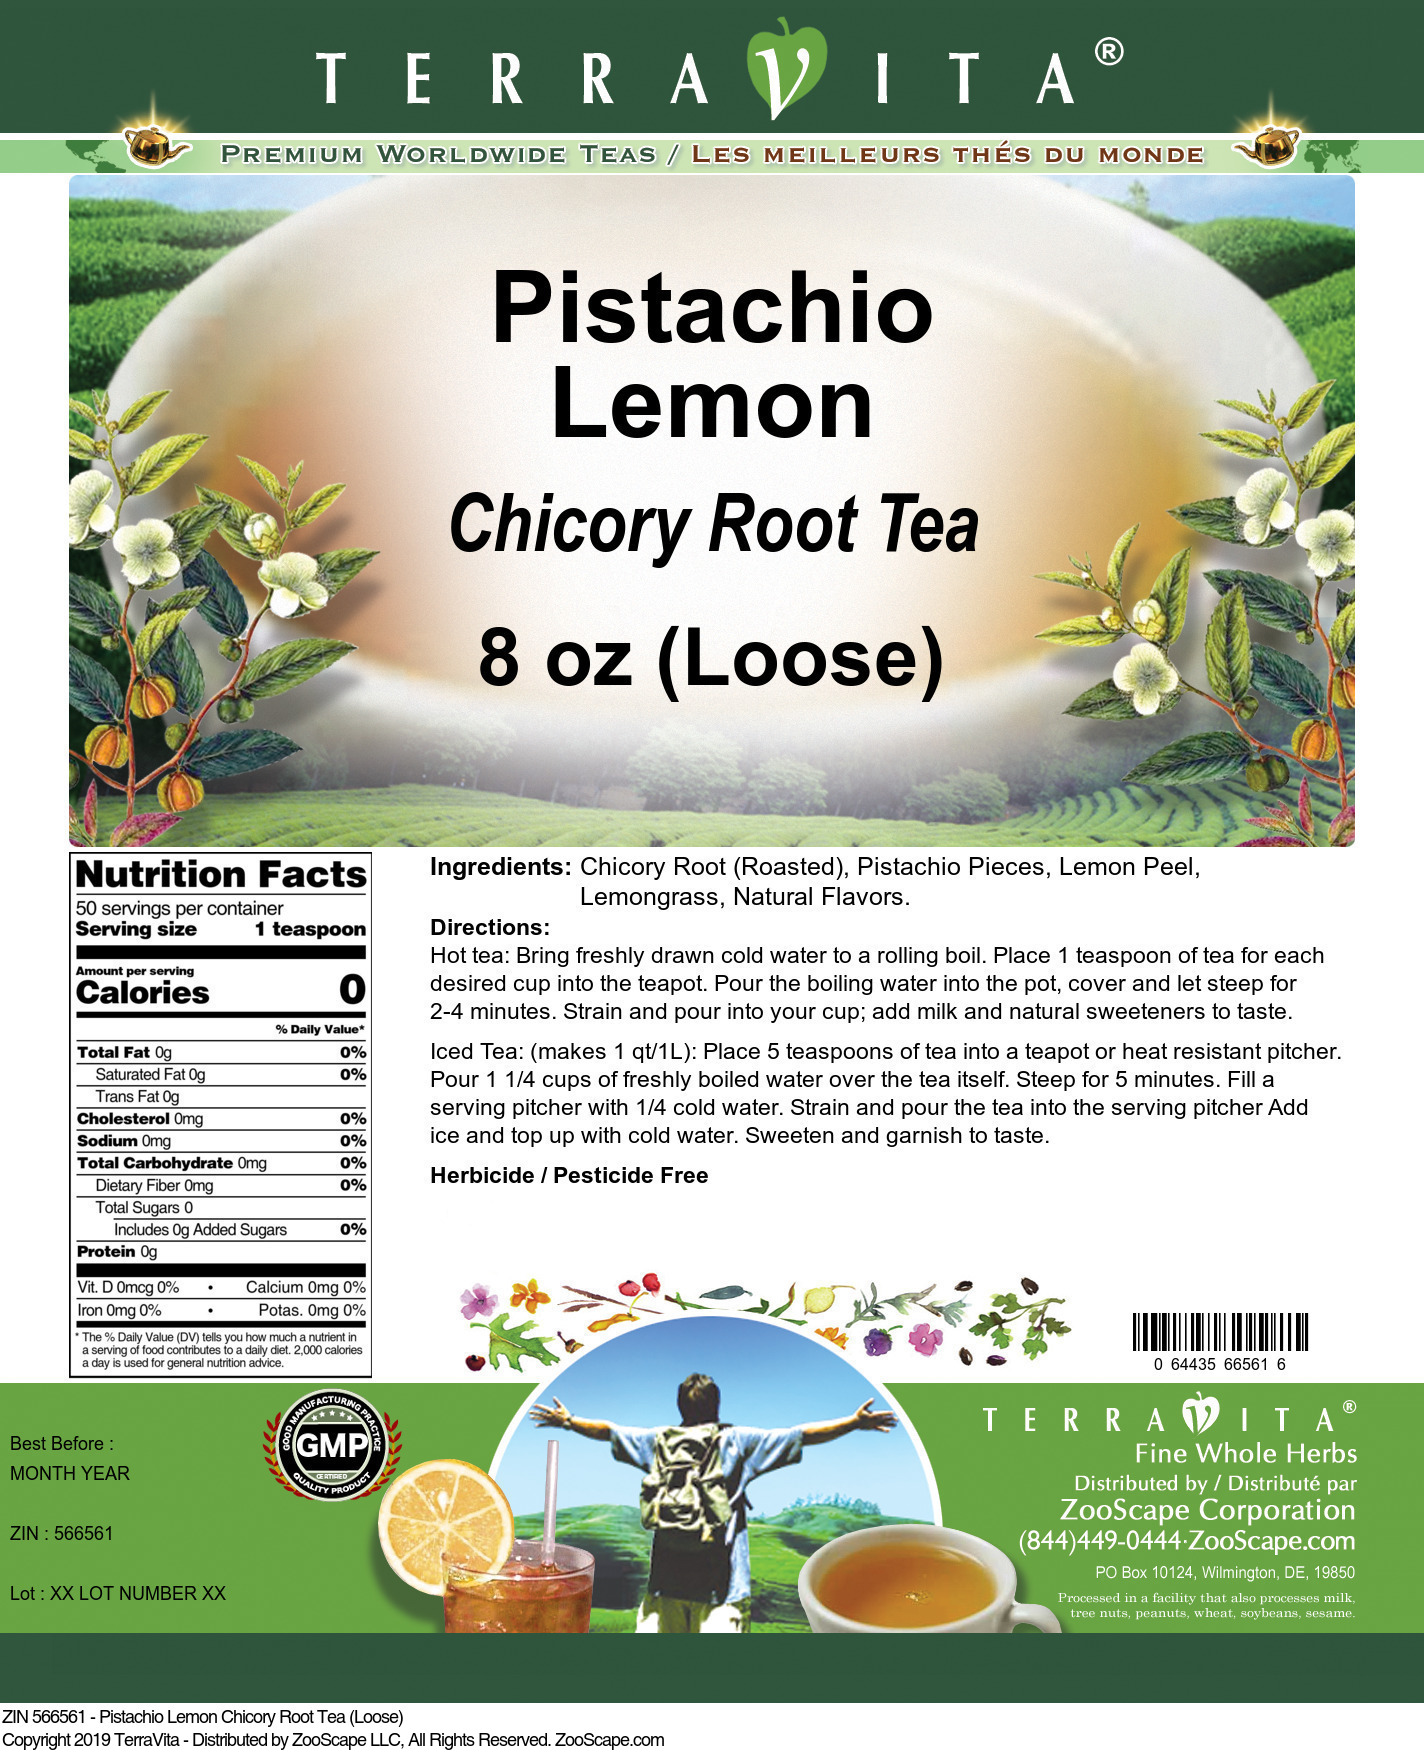 Pistachio Lemon Chicory Root Tea (Loose) - Label